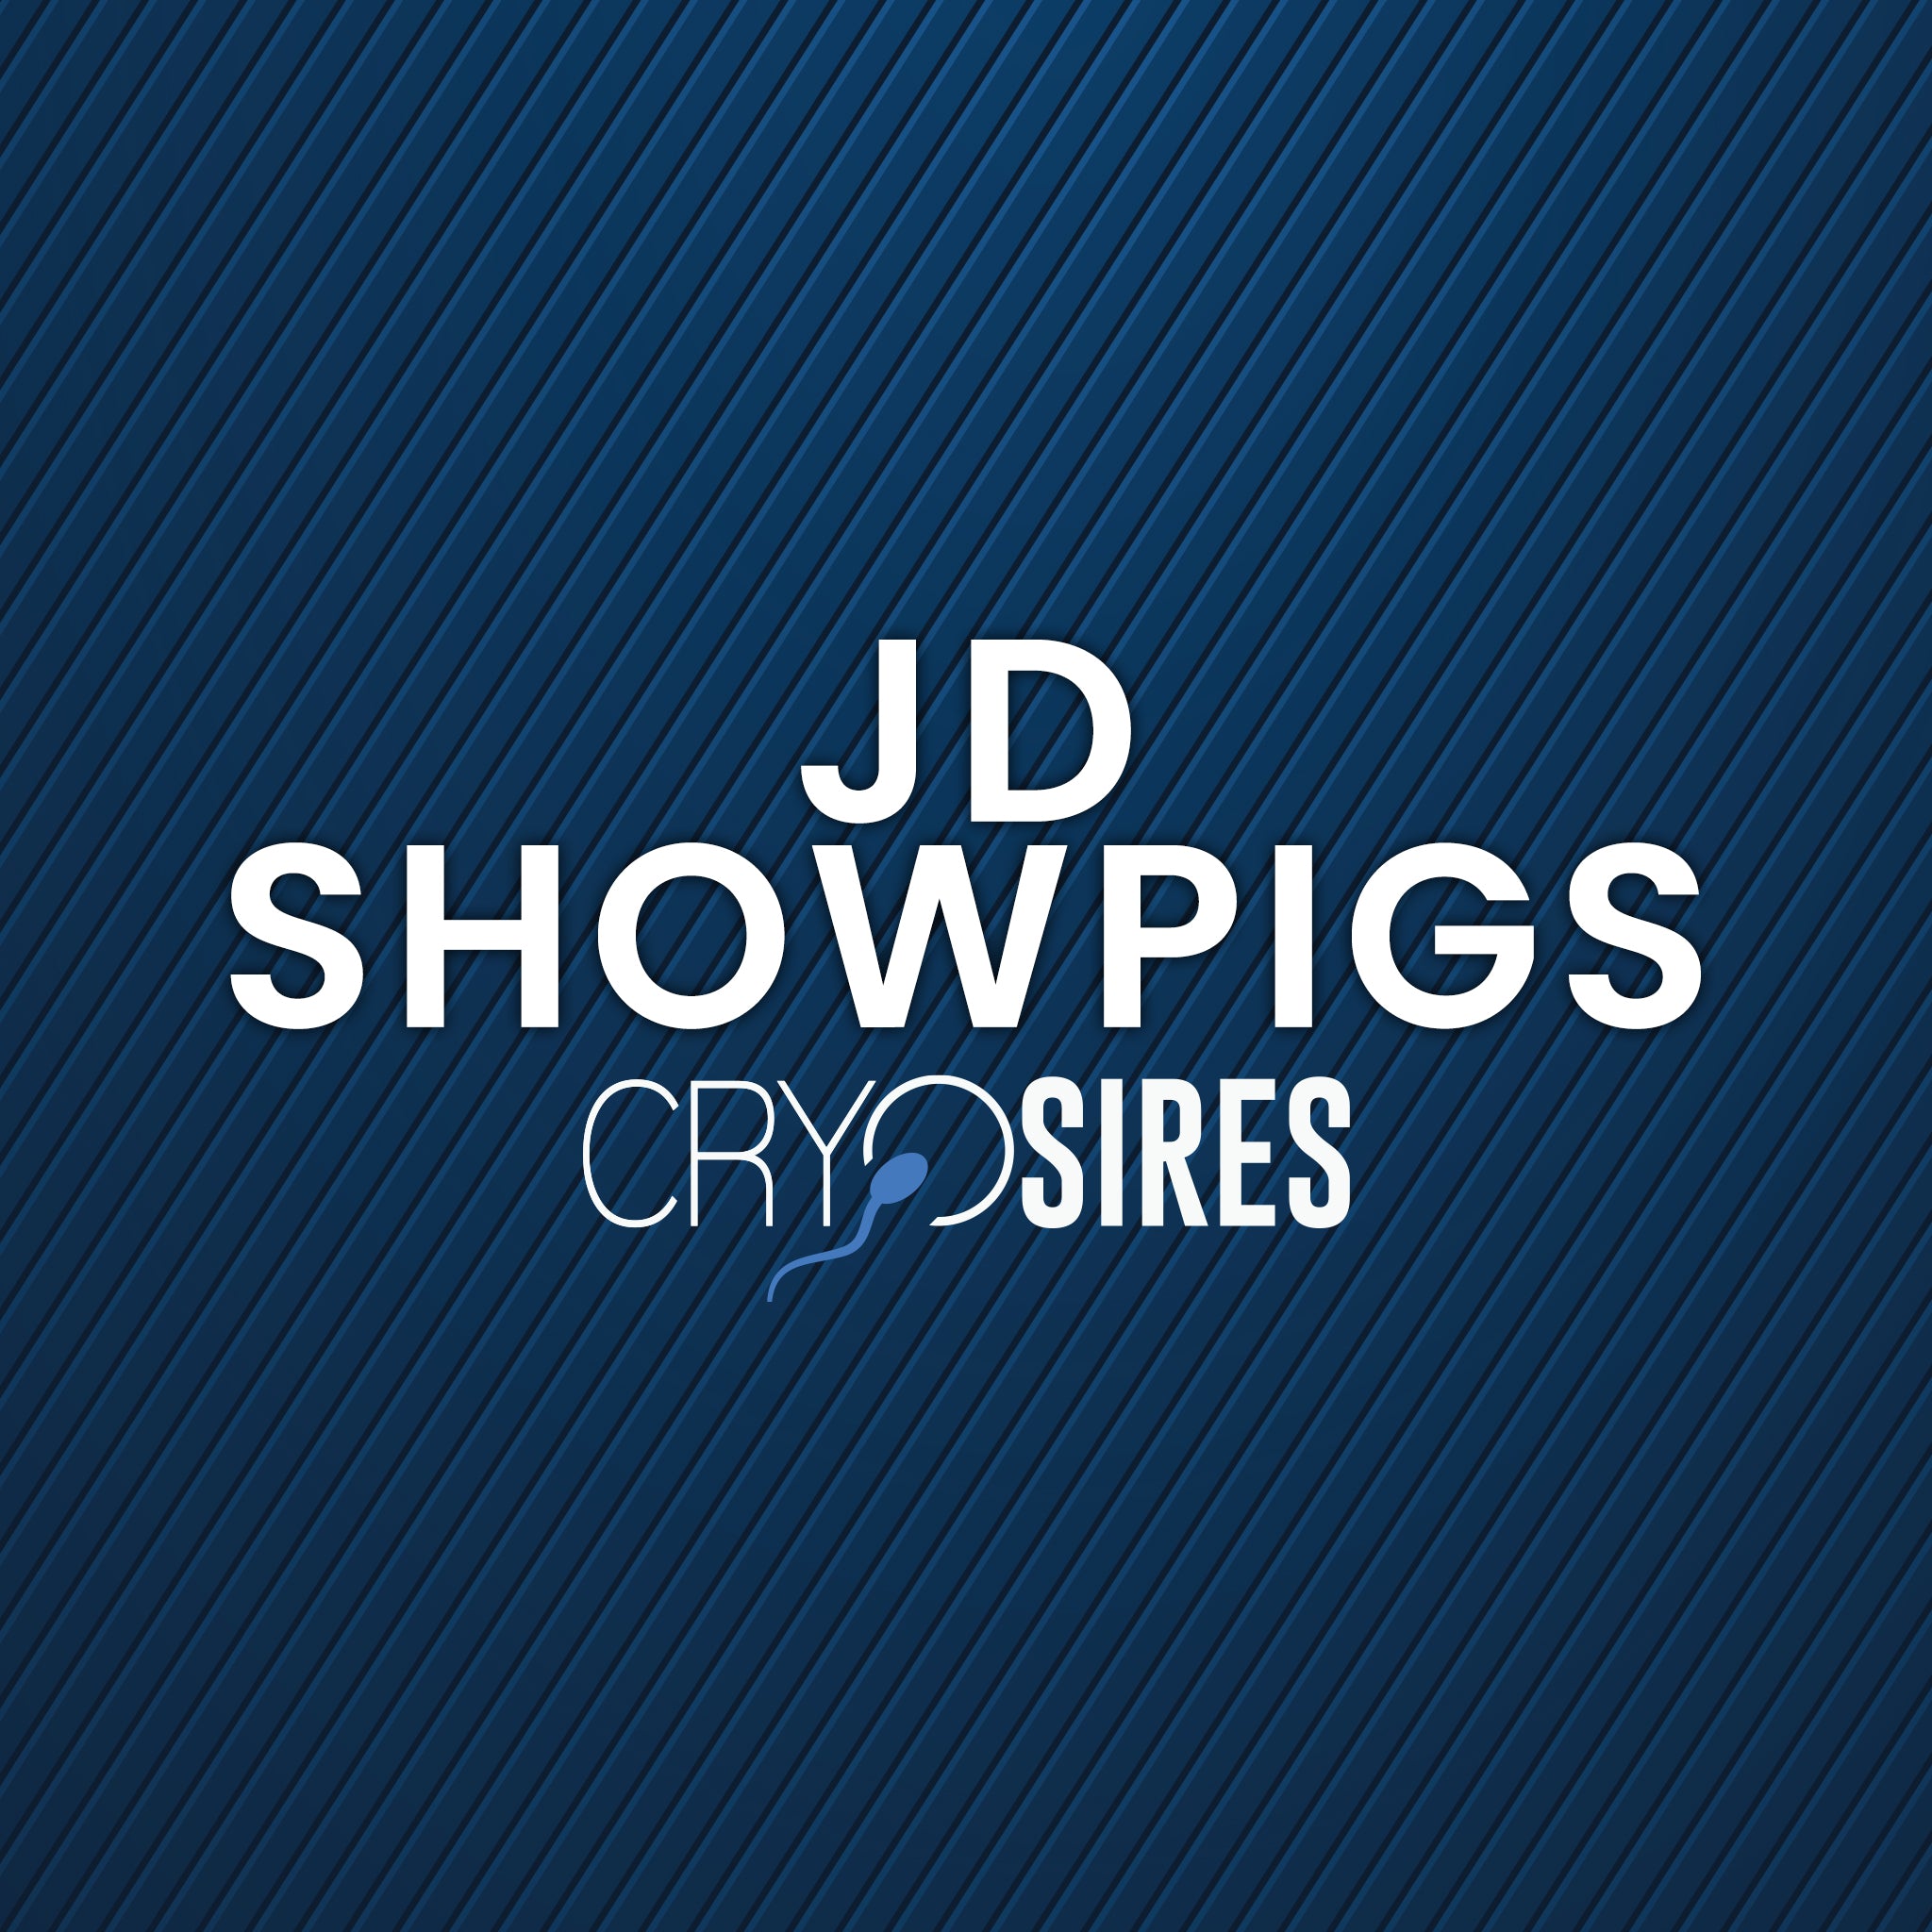 JD Showpigs